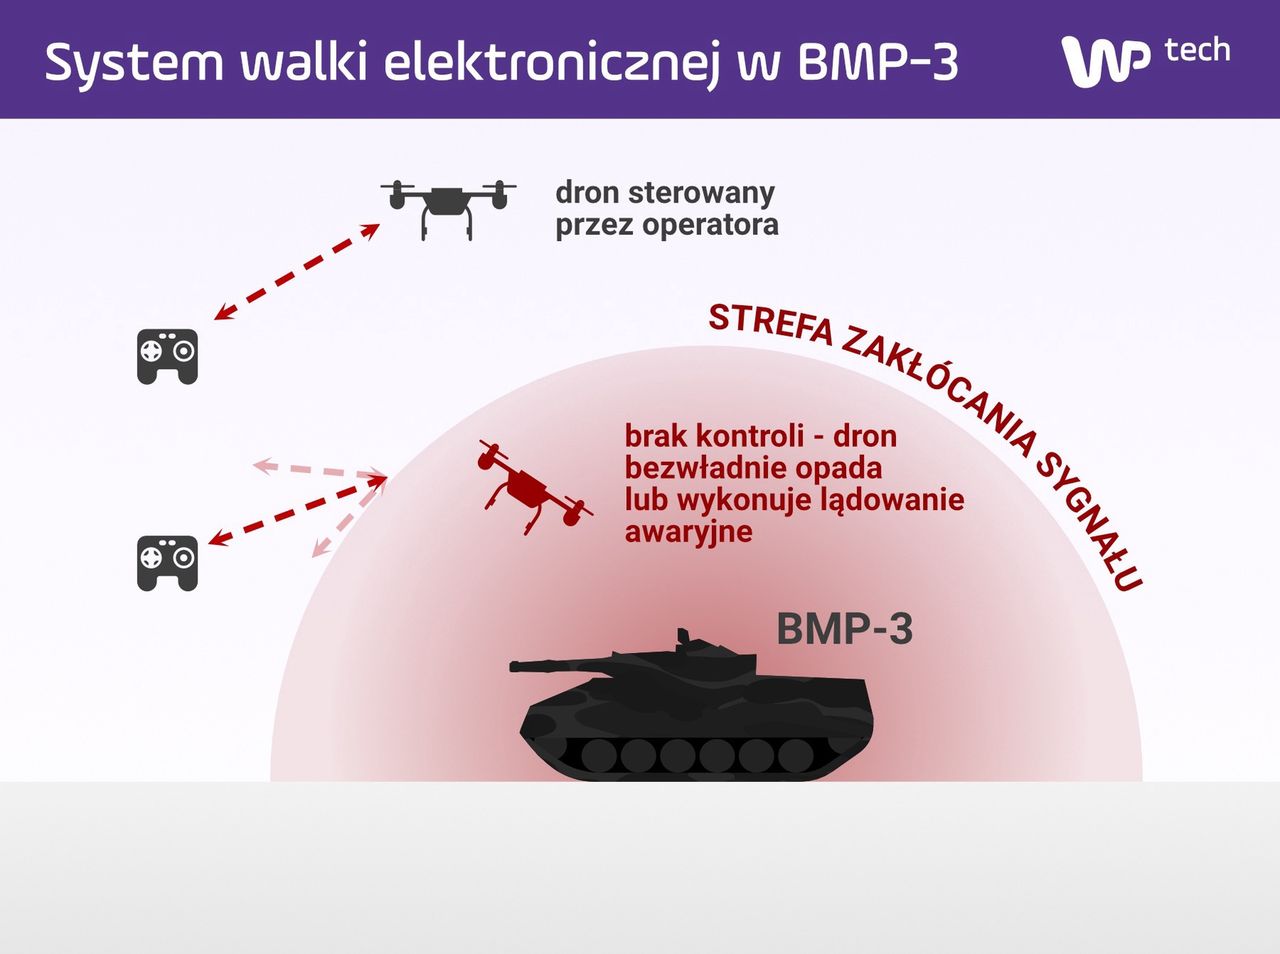 Tak może działać system walki elektronicznej w nowej partii BMP-3 (kliknij, aby powiększyć)